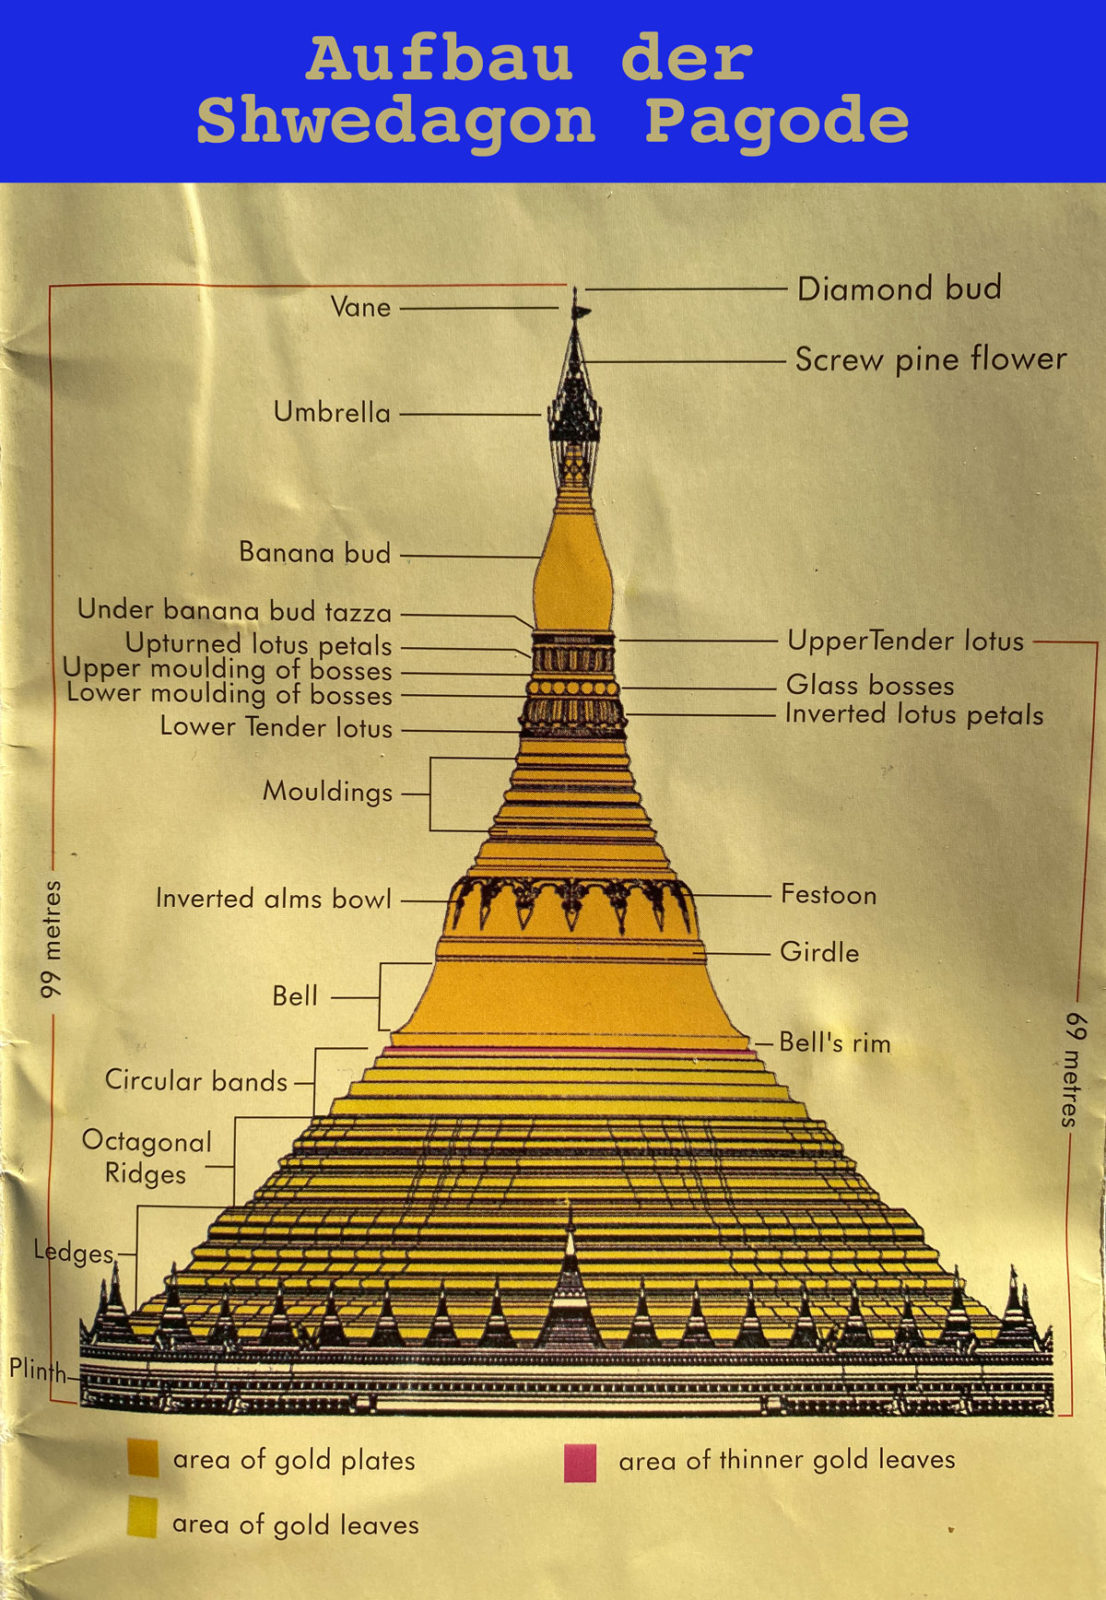 Der Aufbau der Shwedagon Pagode